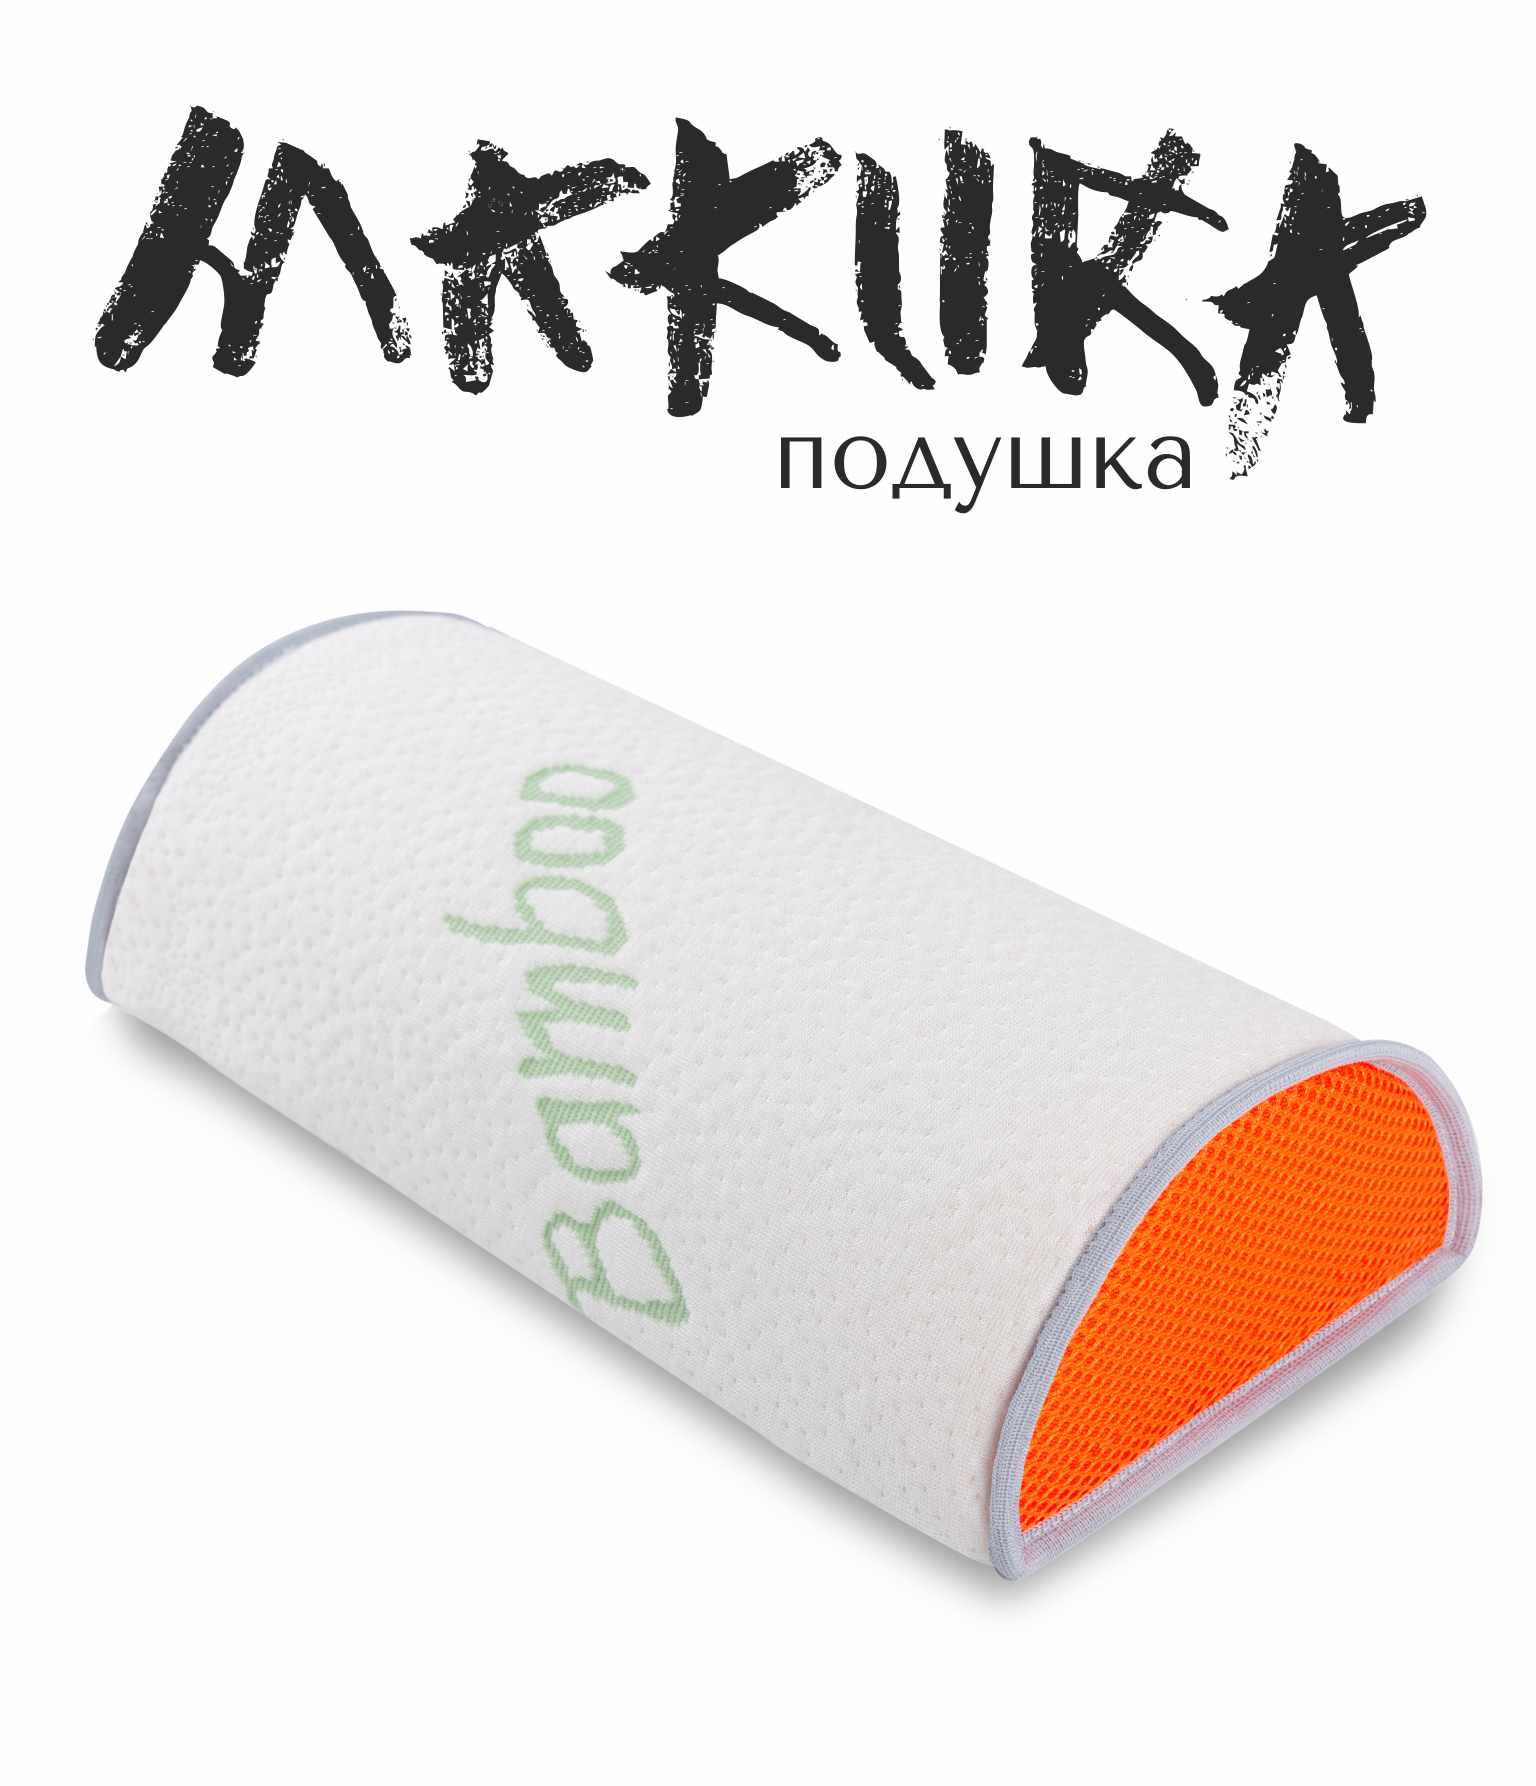 Подушка для спины, поясницы и шеи • Espera Makura /  Эспера Макура •  15х30 см